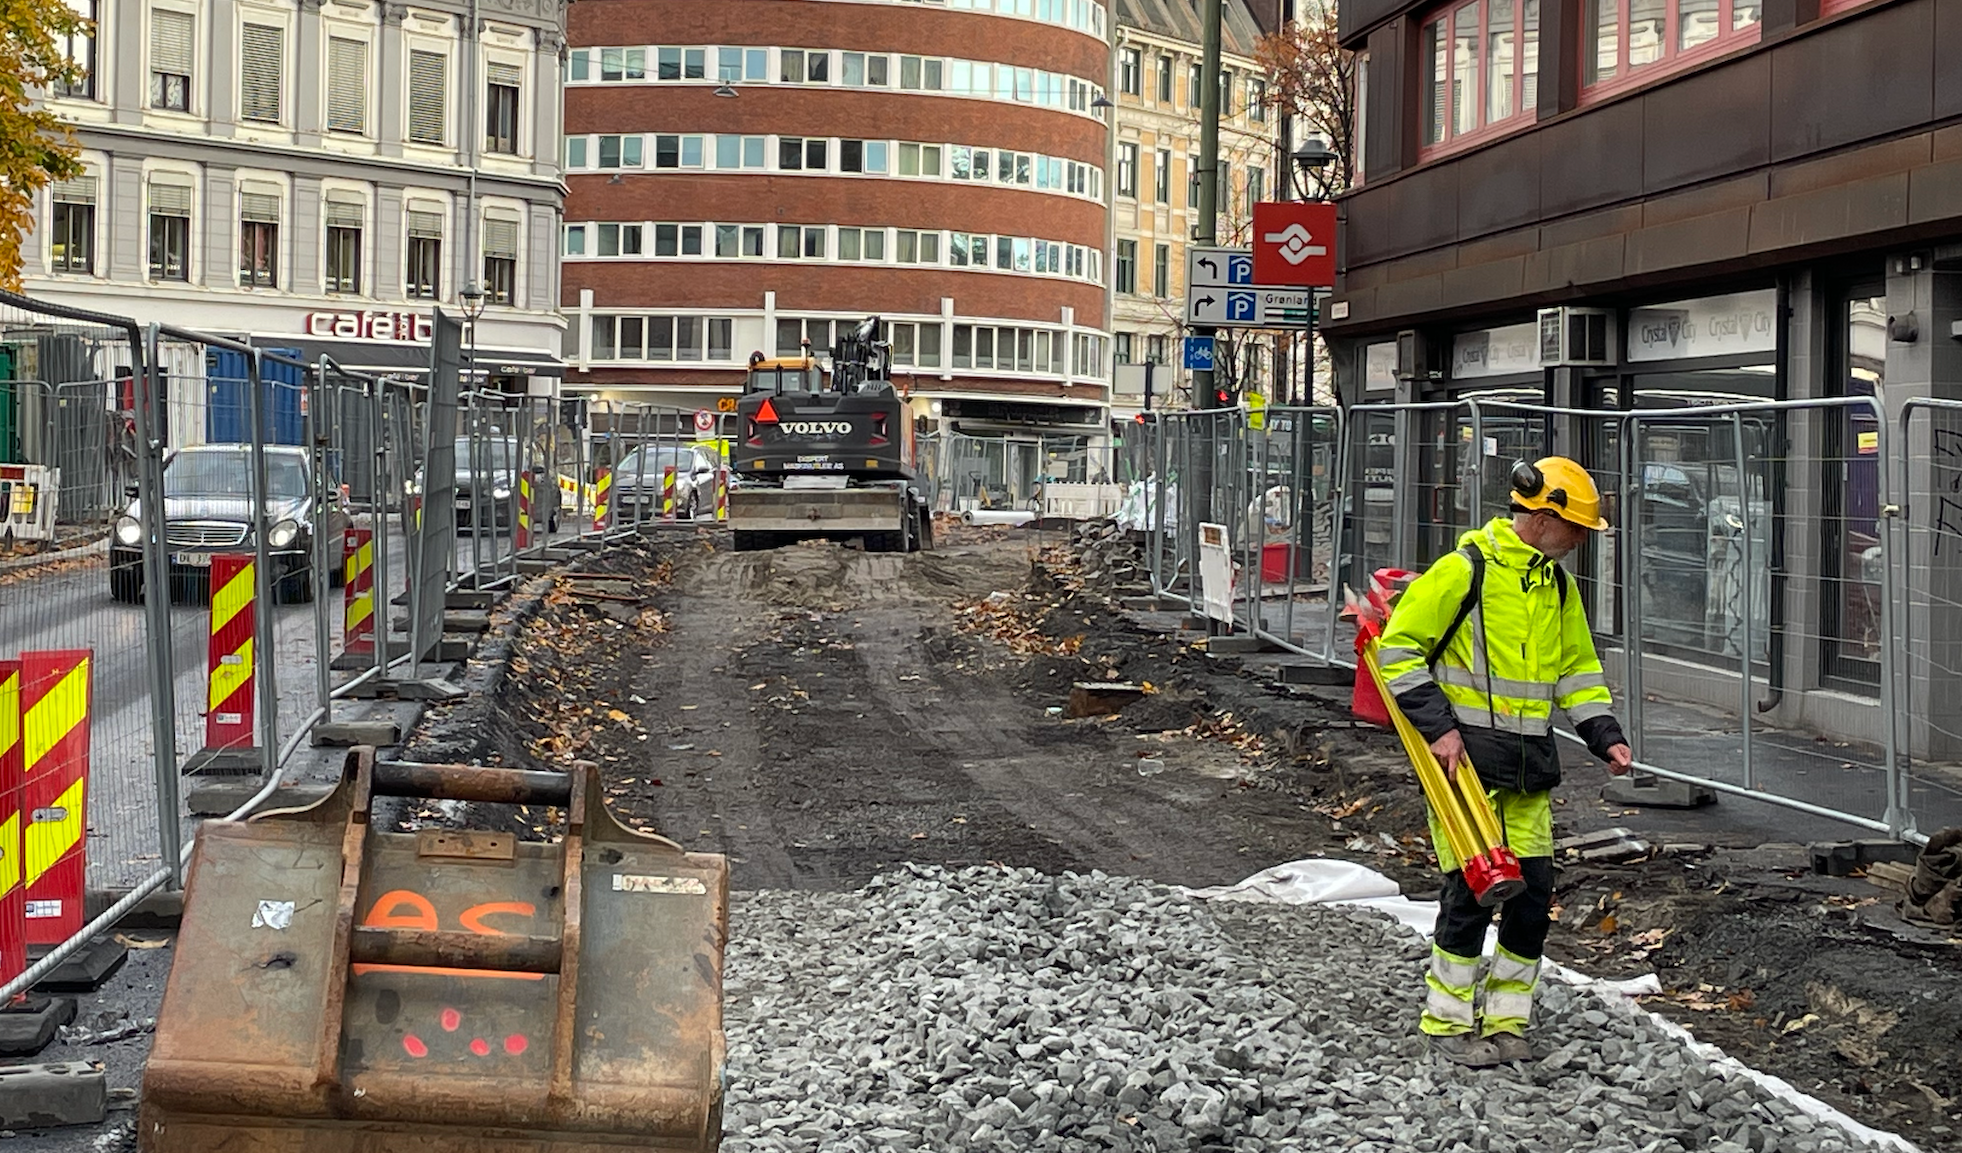 Dette er en del av bybildet i Oslo, med stadig nye prosjekter. Andelen fossilfrie anlegg øker, og i 2025 skal alle bygg- og anleggsplasser i byen være utslippsfrie.